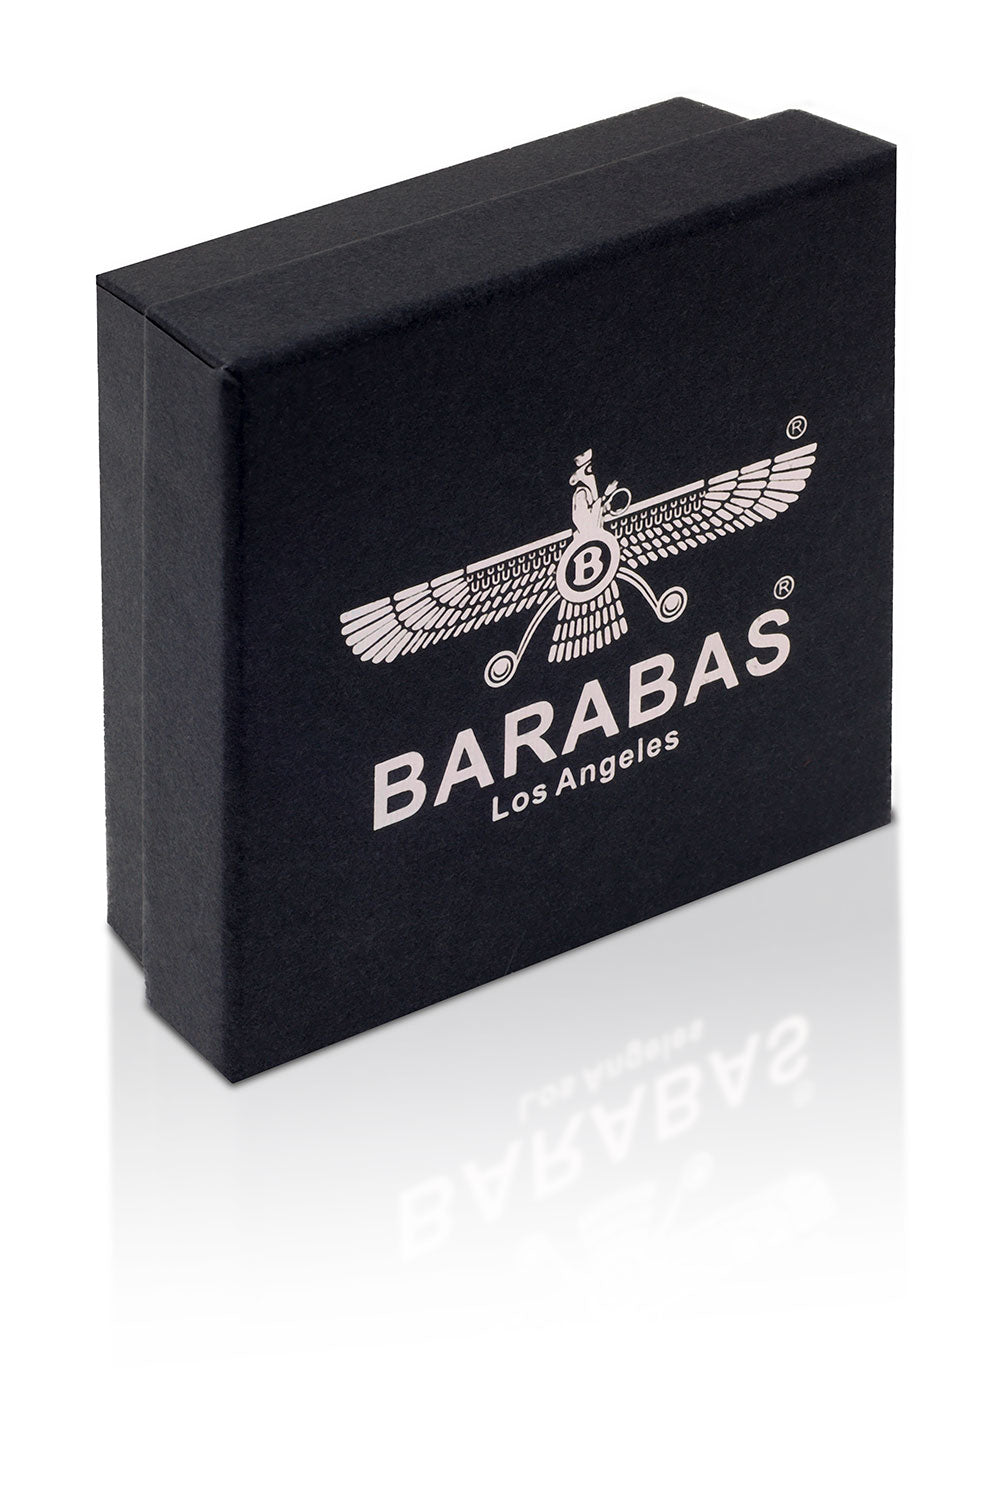 Barabas Unisex Rope Multi-Layer Braided Leather Bracelets 4BMS10 Black